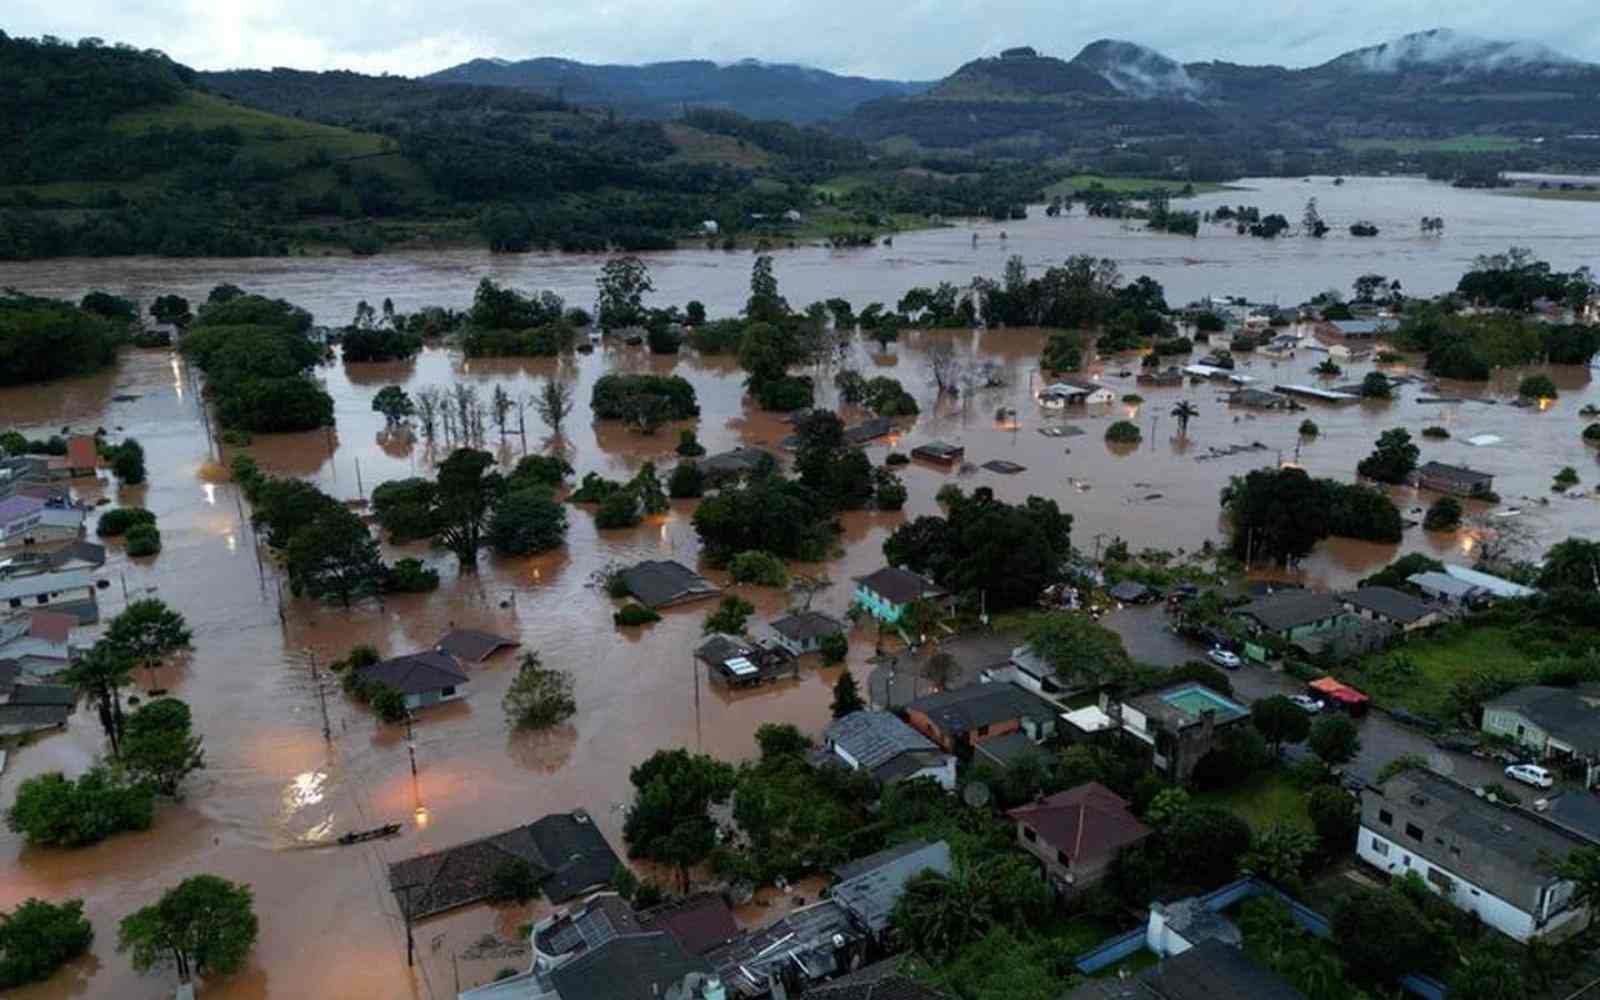 Imagem aérea mostra uma cidade atingida por enchentes, com a água em tom amarronzado chegando até o telhado das casas e copa das árvores. Ao fundo, vê-se montanhas